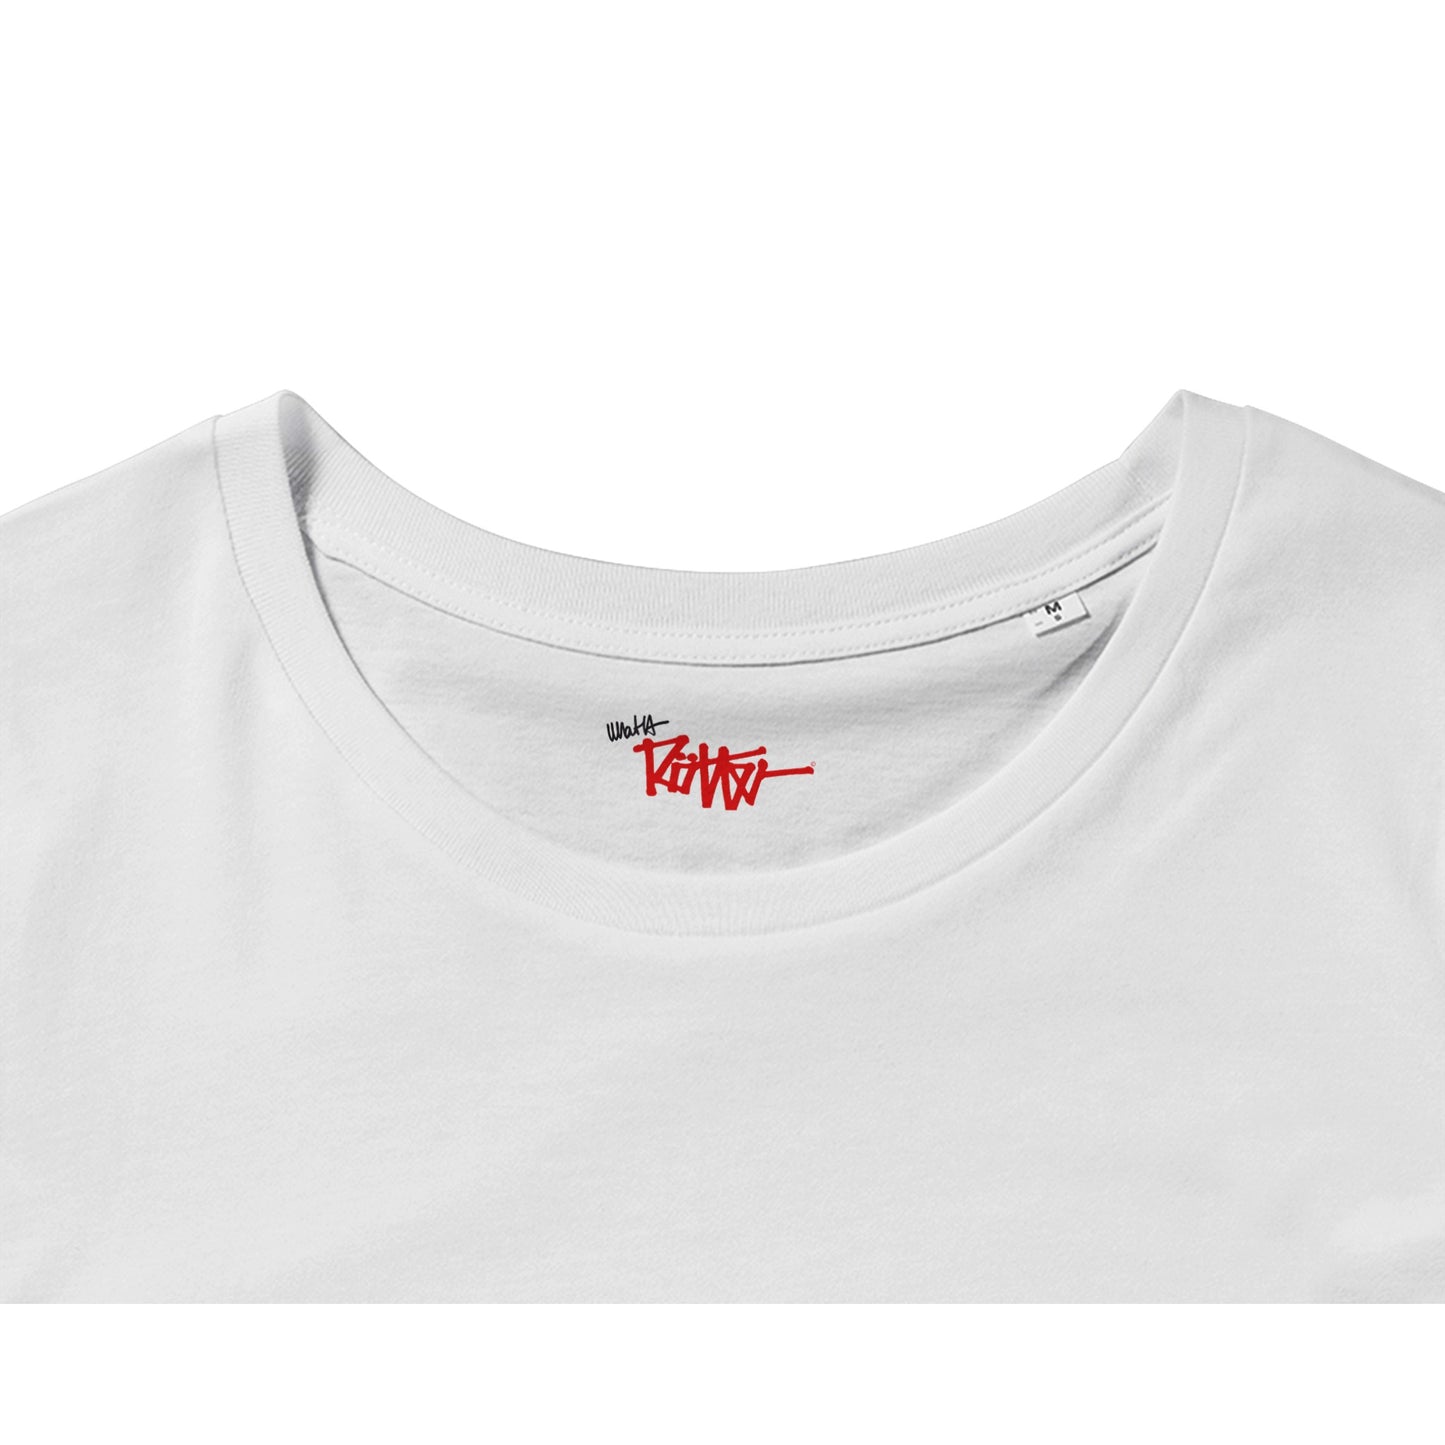 WASOTSH -THEM - T-shirt bio unisexe à col rond